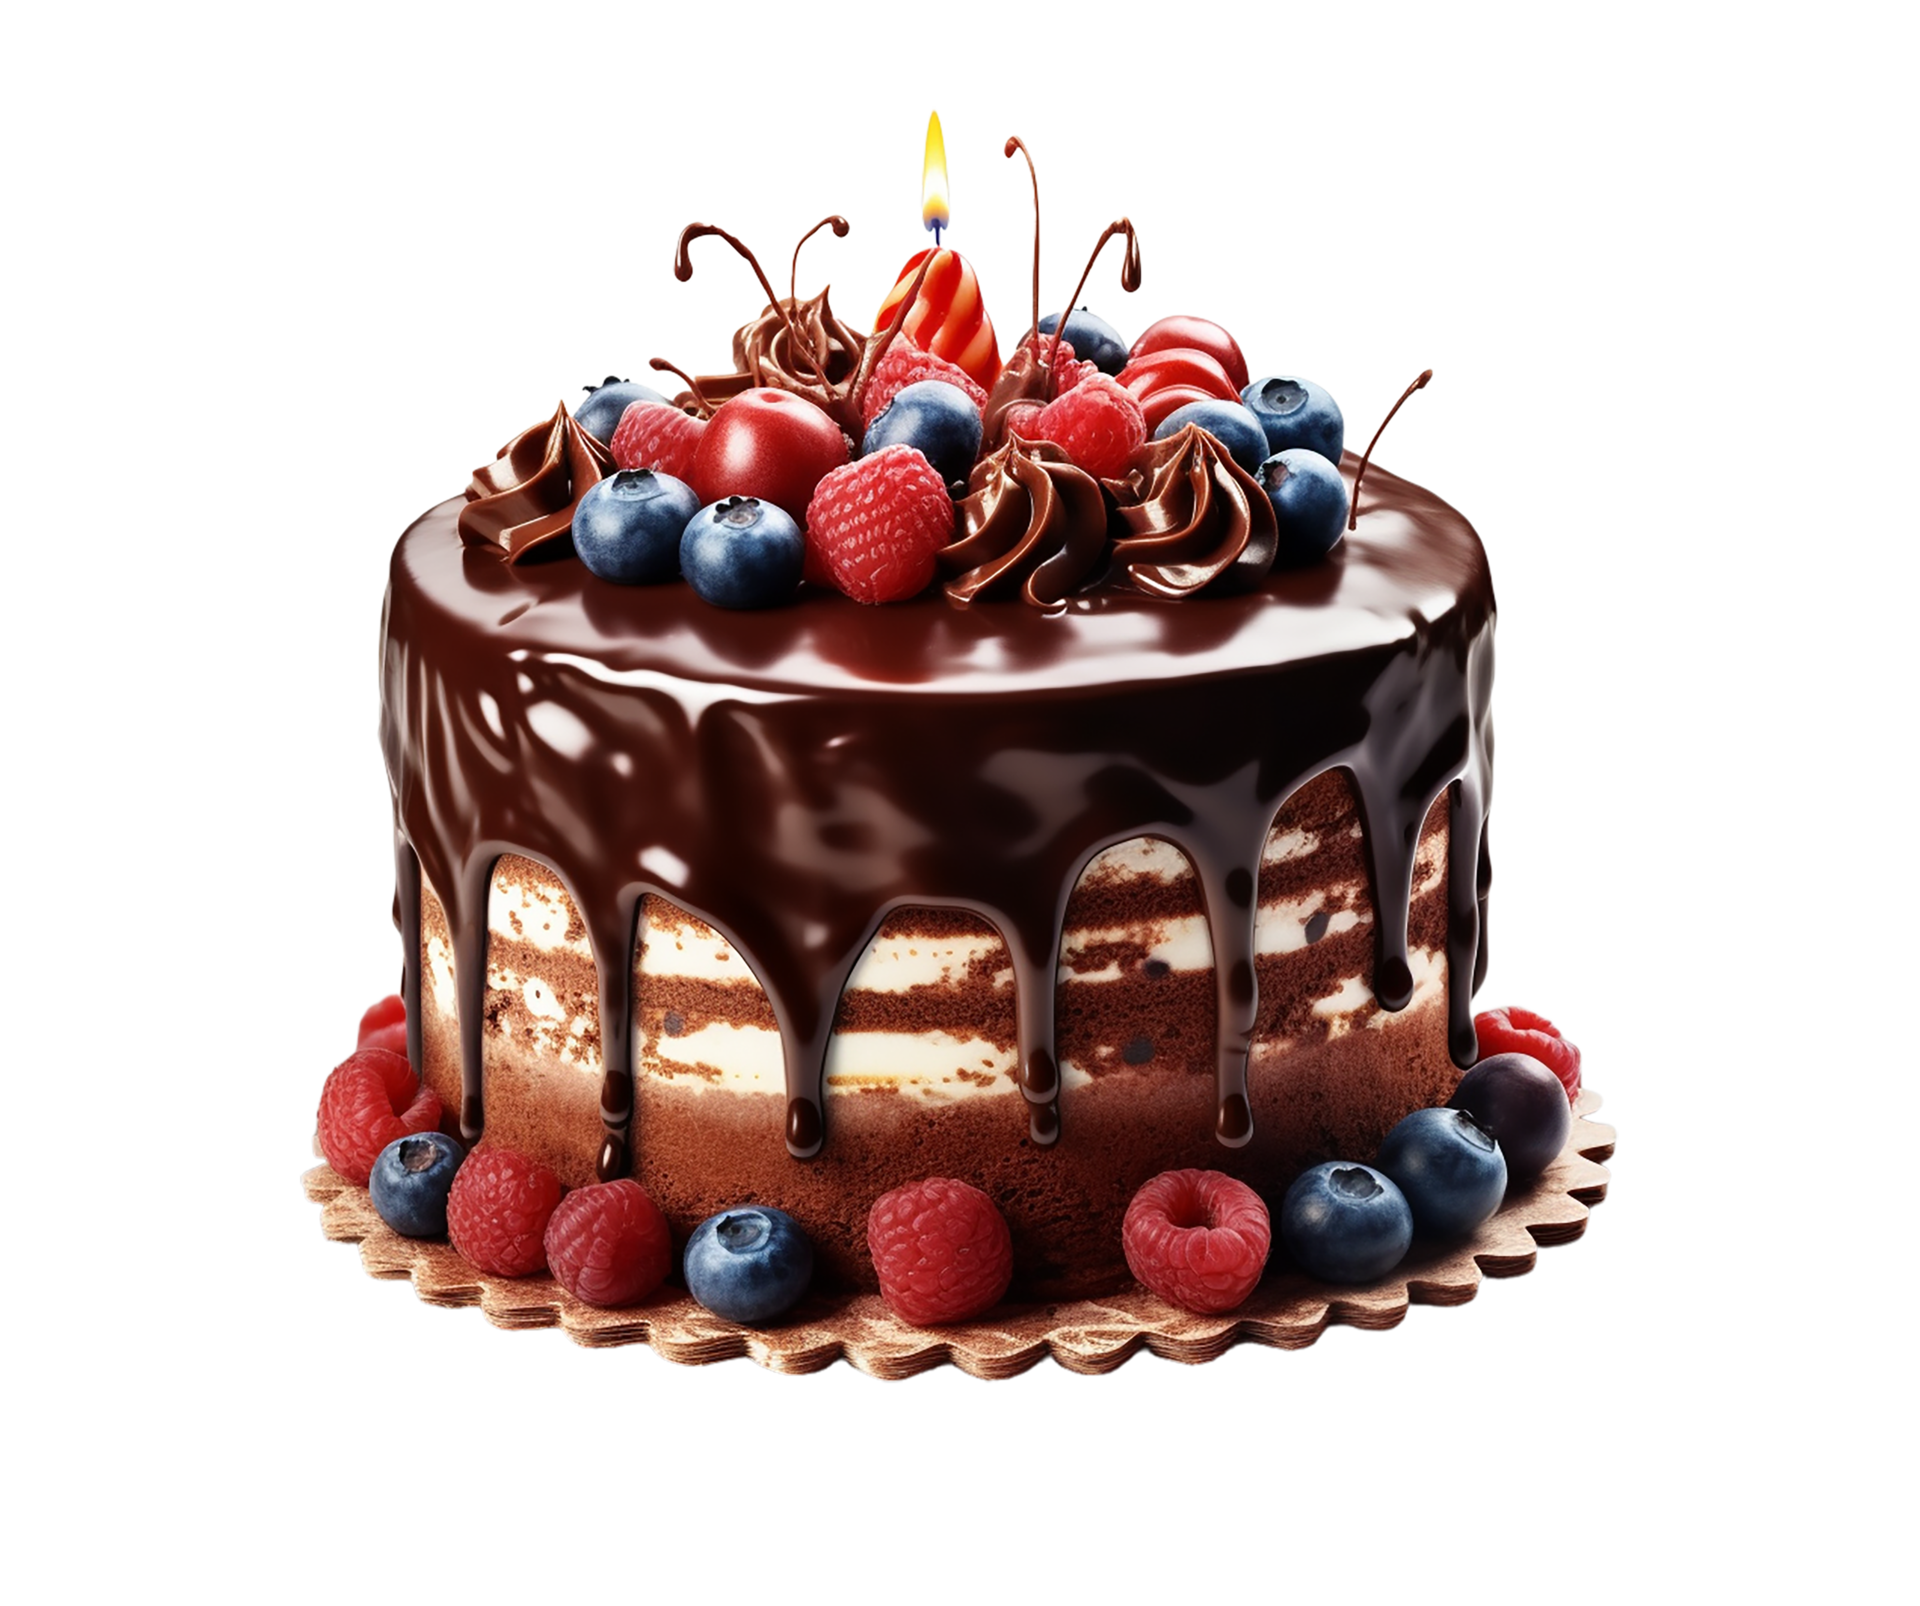 Birthday Cake Png, Happy birthday Cake, birthday Cake Transparent ...